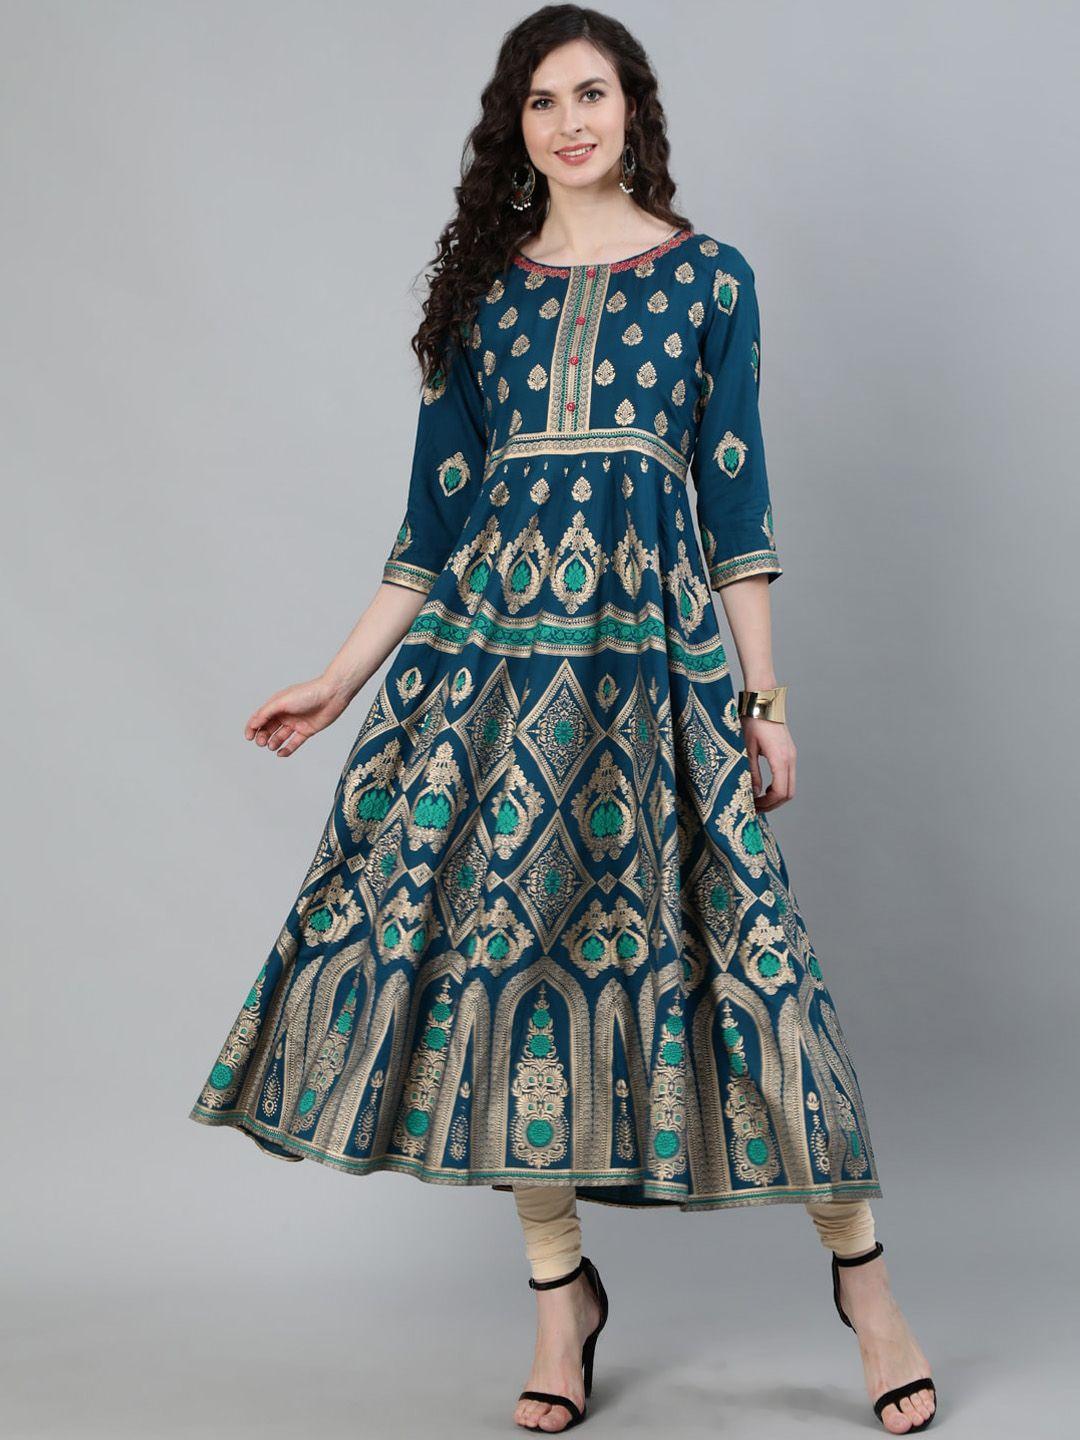 jaipur-kurti-women-turquoise-blue-&-gold-ethnic-motifs-printed-handloom-anarkali-kurta